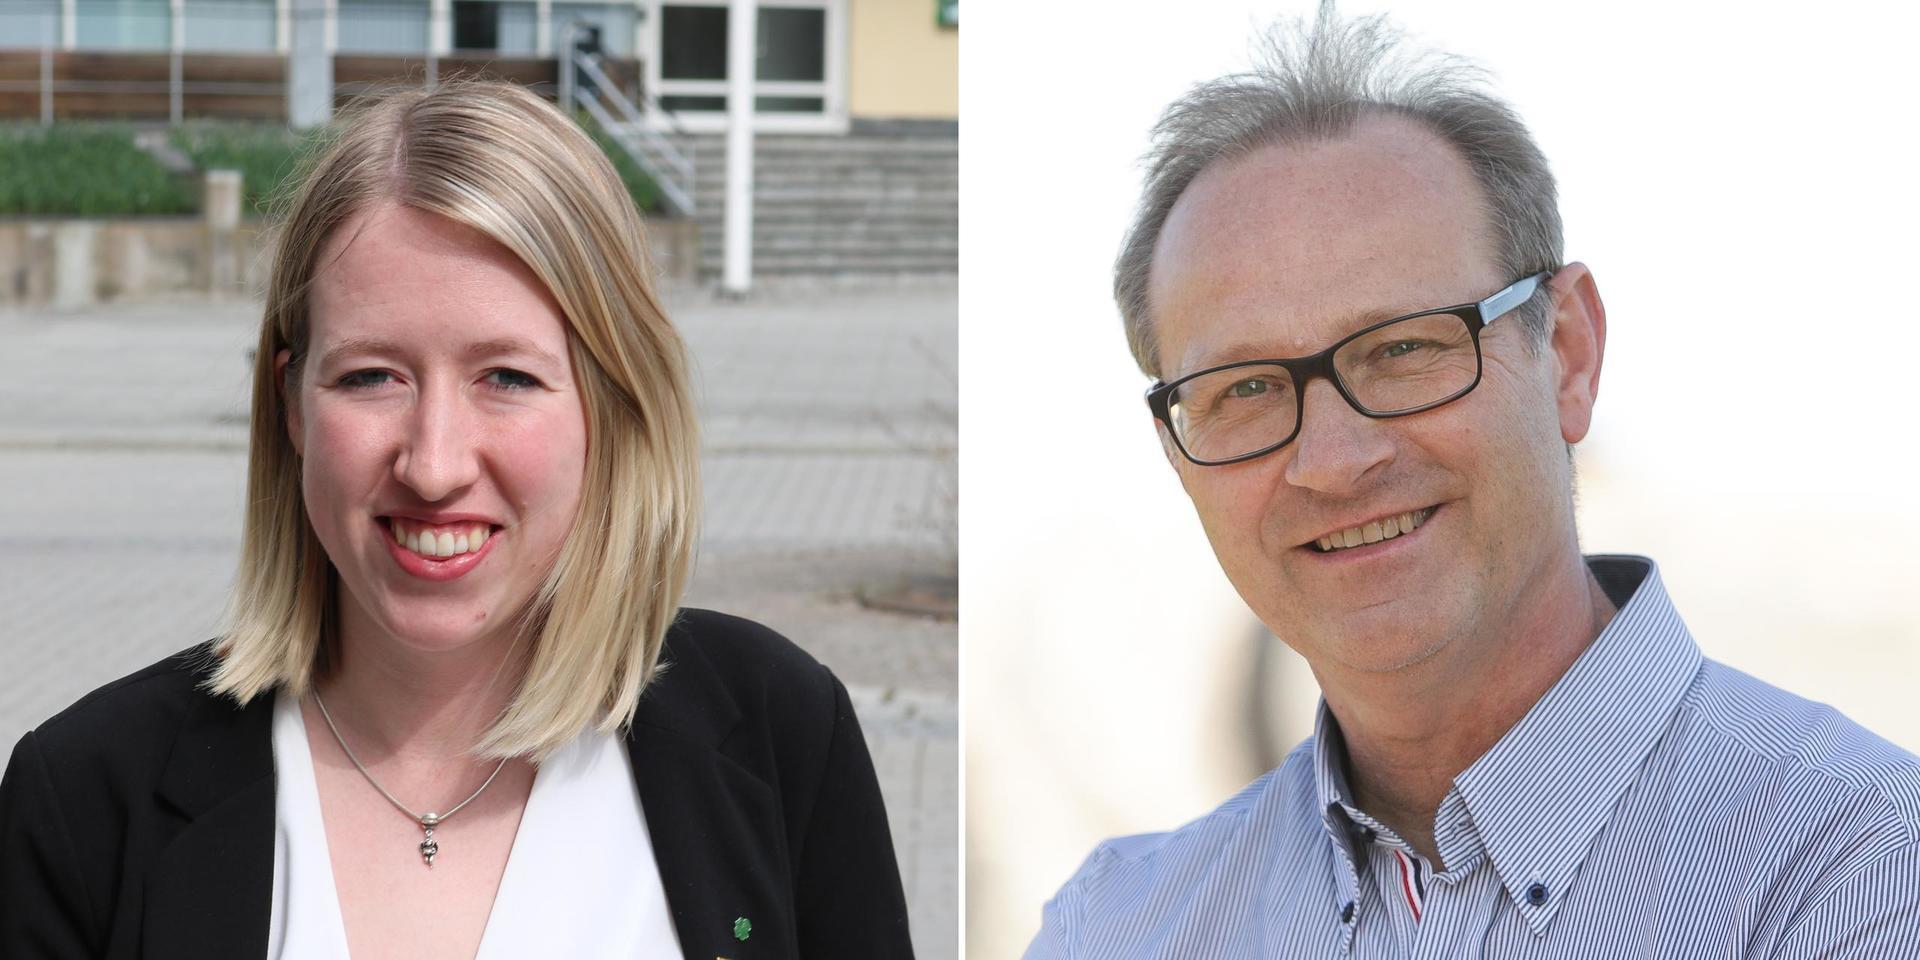 Centerpartiet vill att vården ska kännas nära för hallänningarna, skriver Angeline Eriksson (C) och Ove Bengtsson (C).